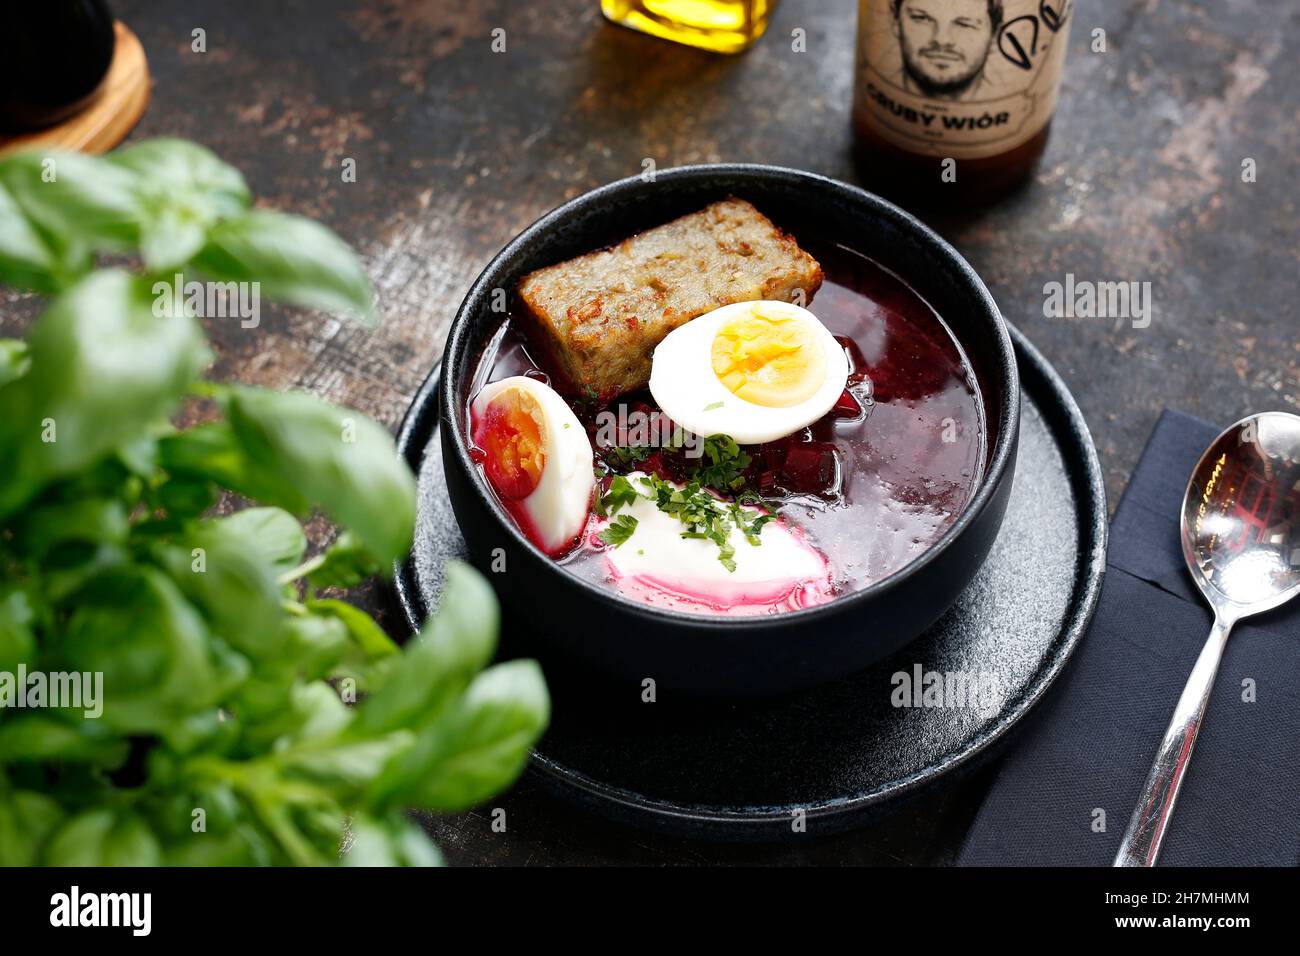 Soupe de betteraves avec œuf.Un plat appétissant.Photographie culinaire, une proposition de servir un repas. Banque D'Images